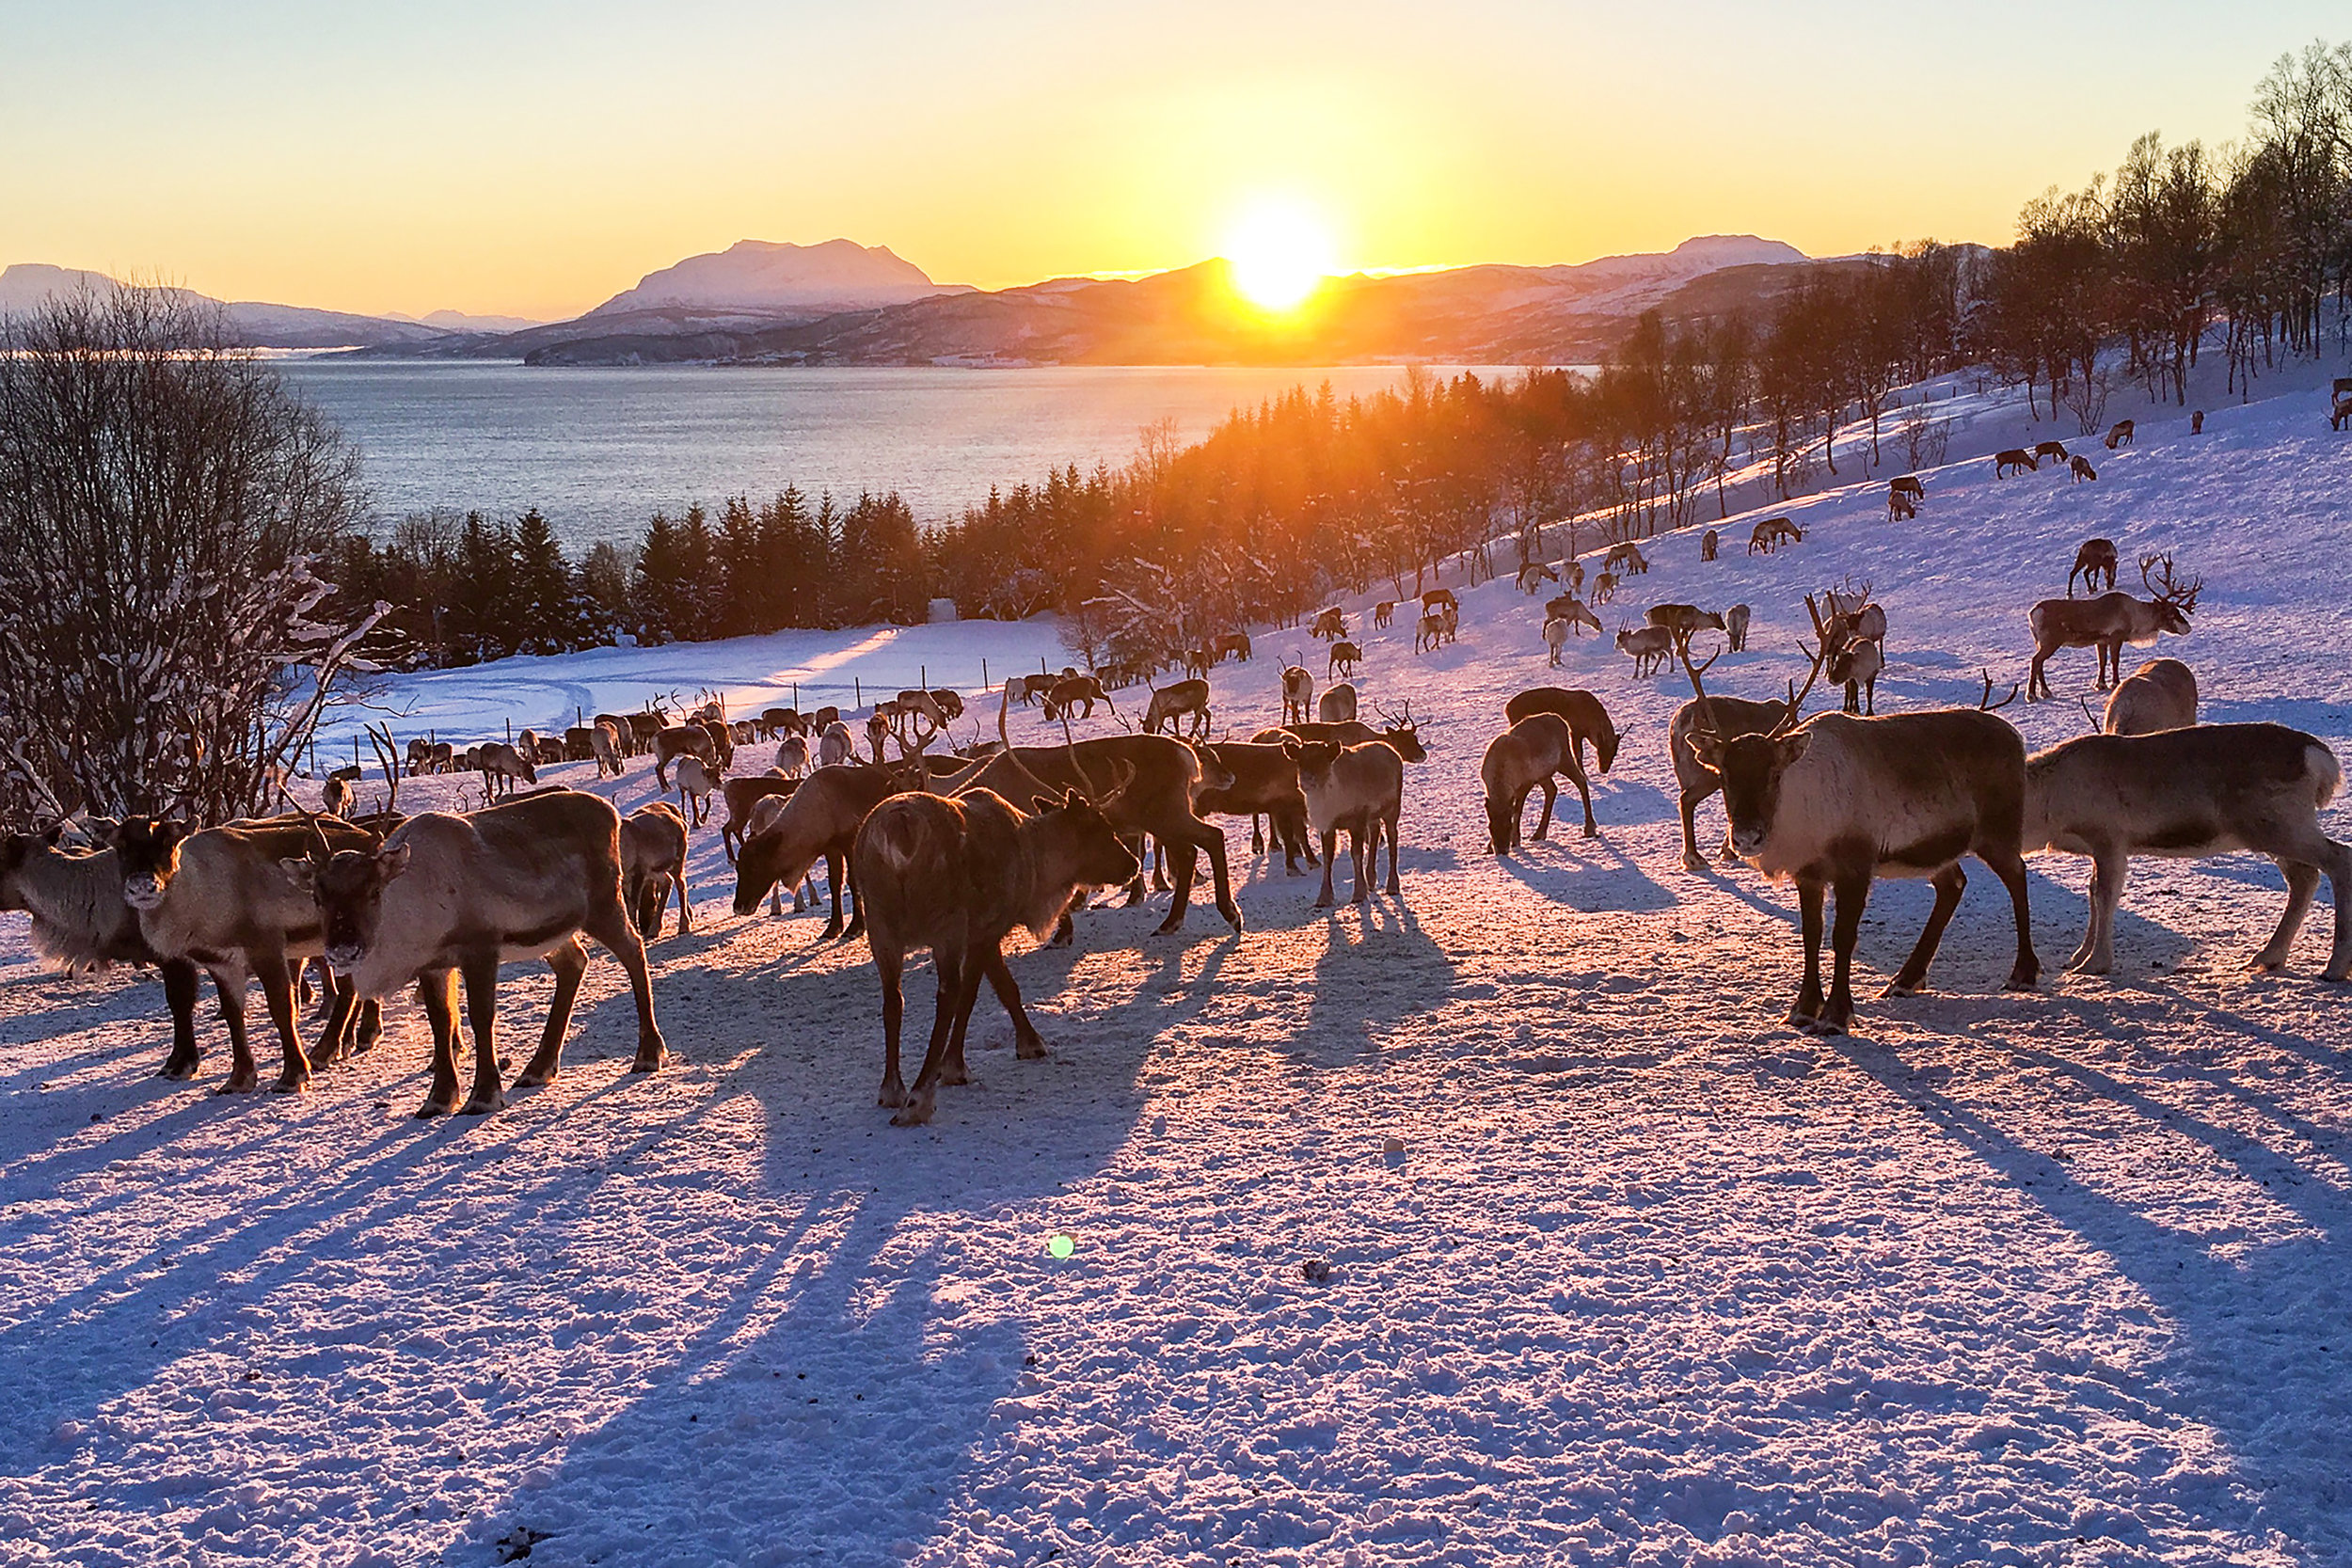  Kvaløya , Norway. January 2019. Photo credit: Amy Martin 